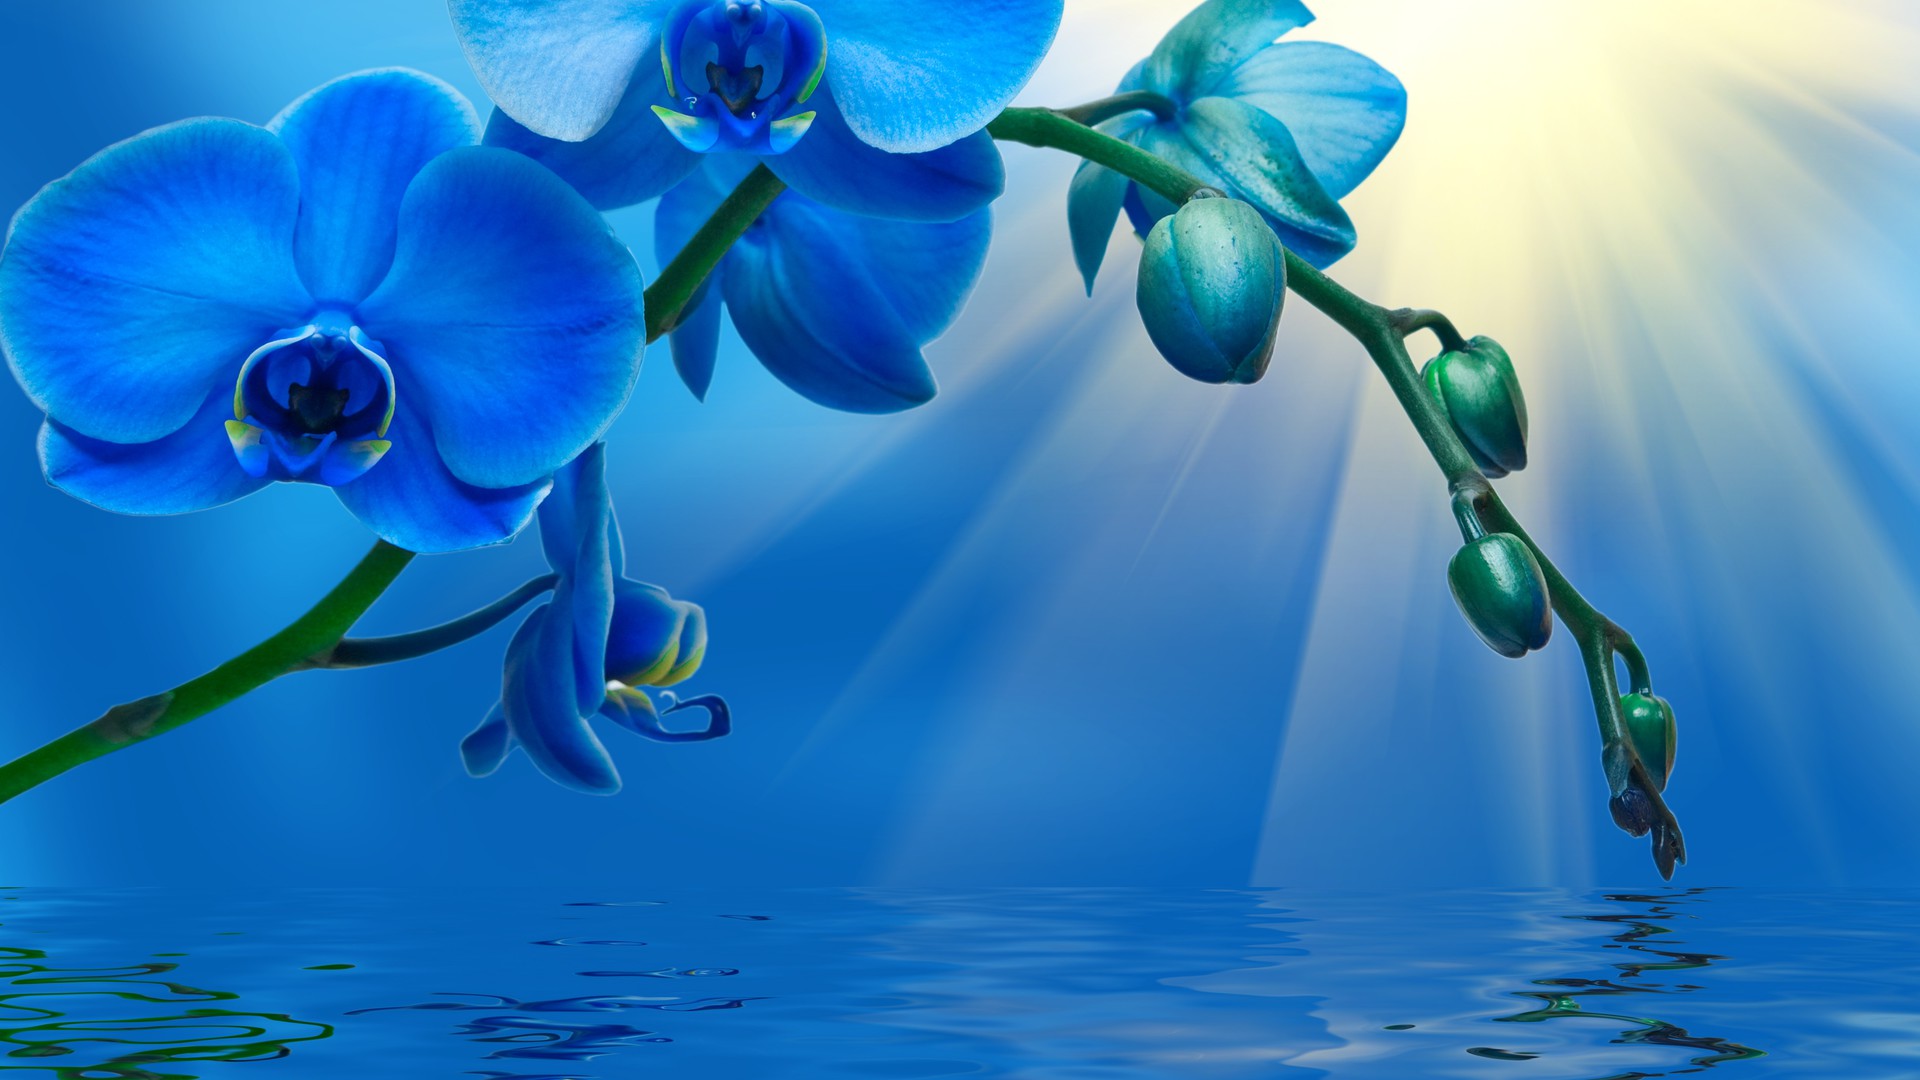 Скачать обои бесплатно Вода, Цветок, Синий, Орхидея, Земля/природа, Синий Цветок, Флауэрсы картинка на рабочий стол ПК